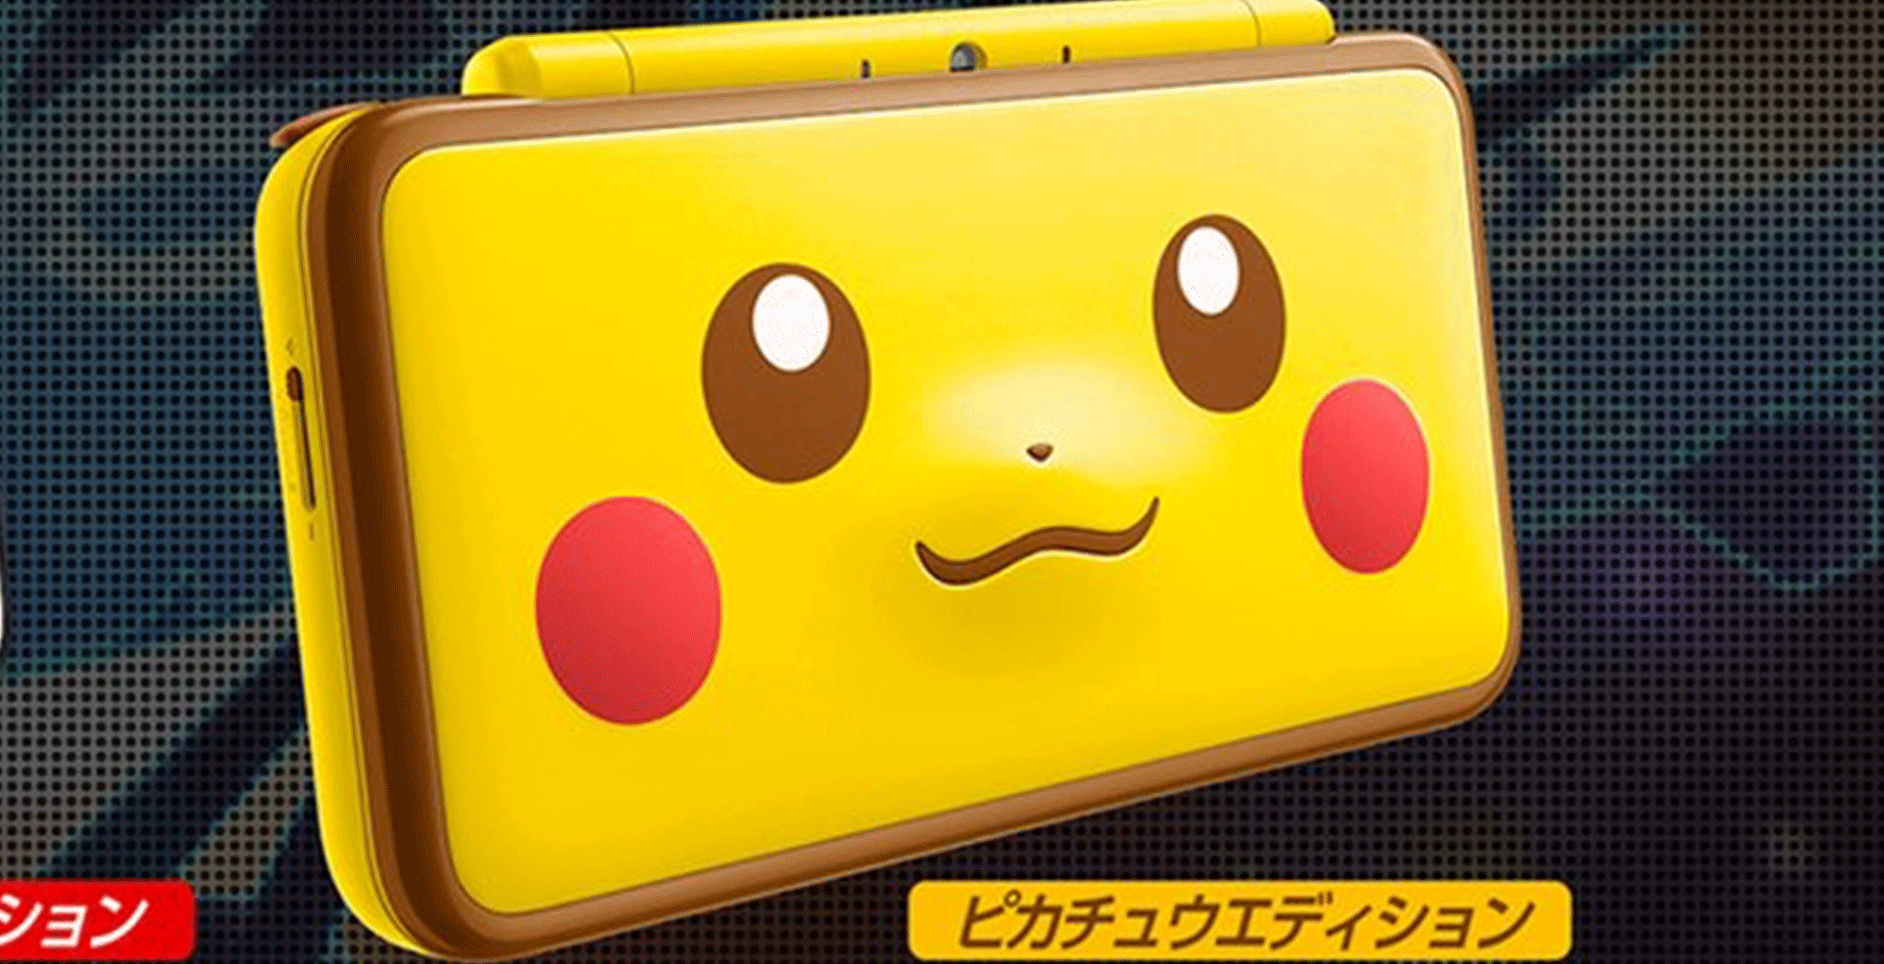 Pikachu presente en una consola de New Nintendo 2DS XL